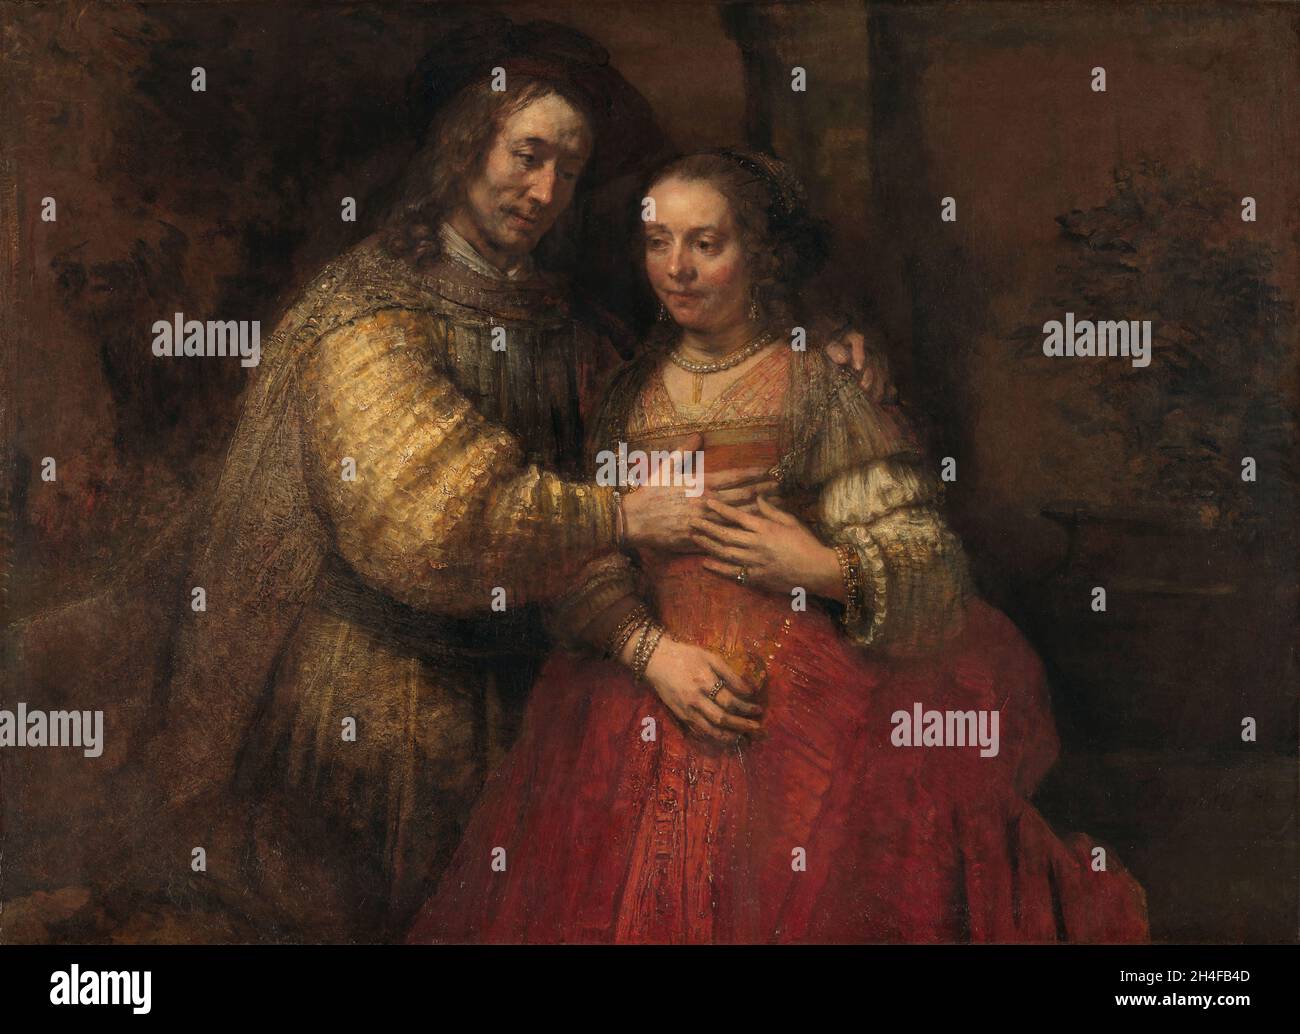 Isaac y Rebecca, conocida como la Novia Judía, Rembrandt van Rijn, Rijksmuseum, Amsterdam Foto de stock